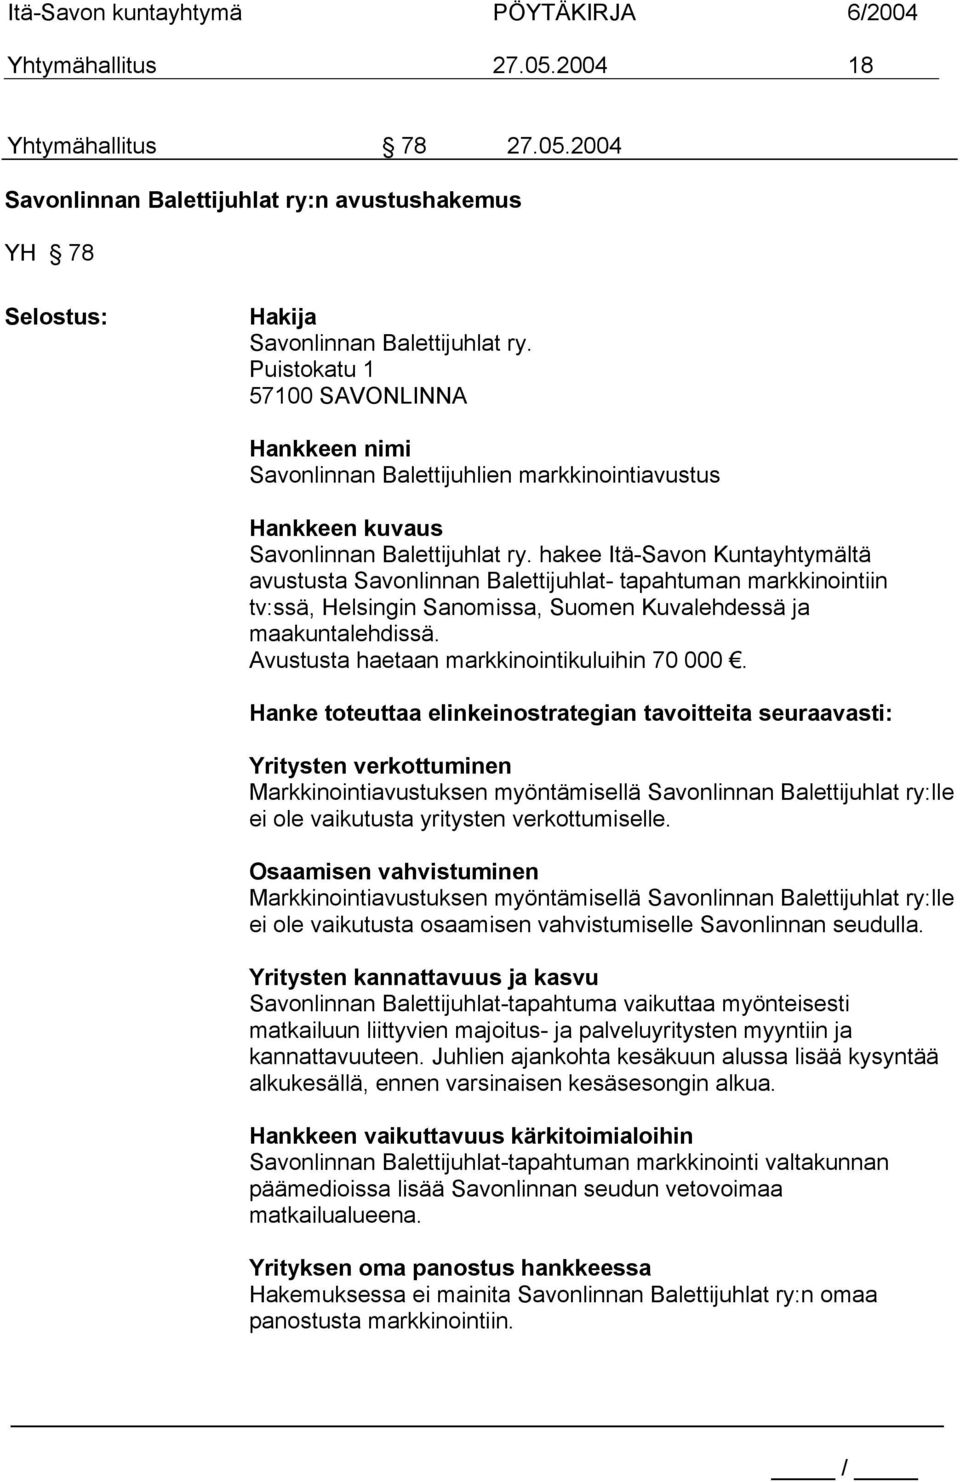 hakee Itä-Savon Kuntayhtymältä avustusta Savonlinnan Balettijuhlat- tapahtuman markkinointiin tv:ssä, Helsingin Sanomissa, Suomen Kuvalehdessä ja maakuntalehdissä.